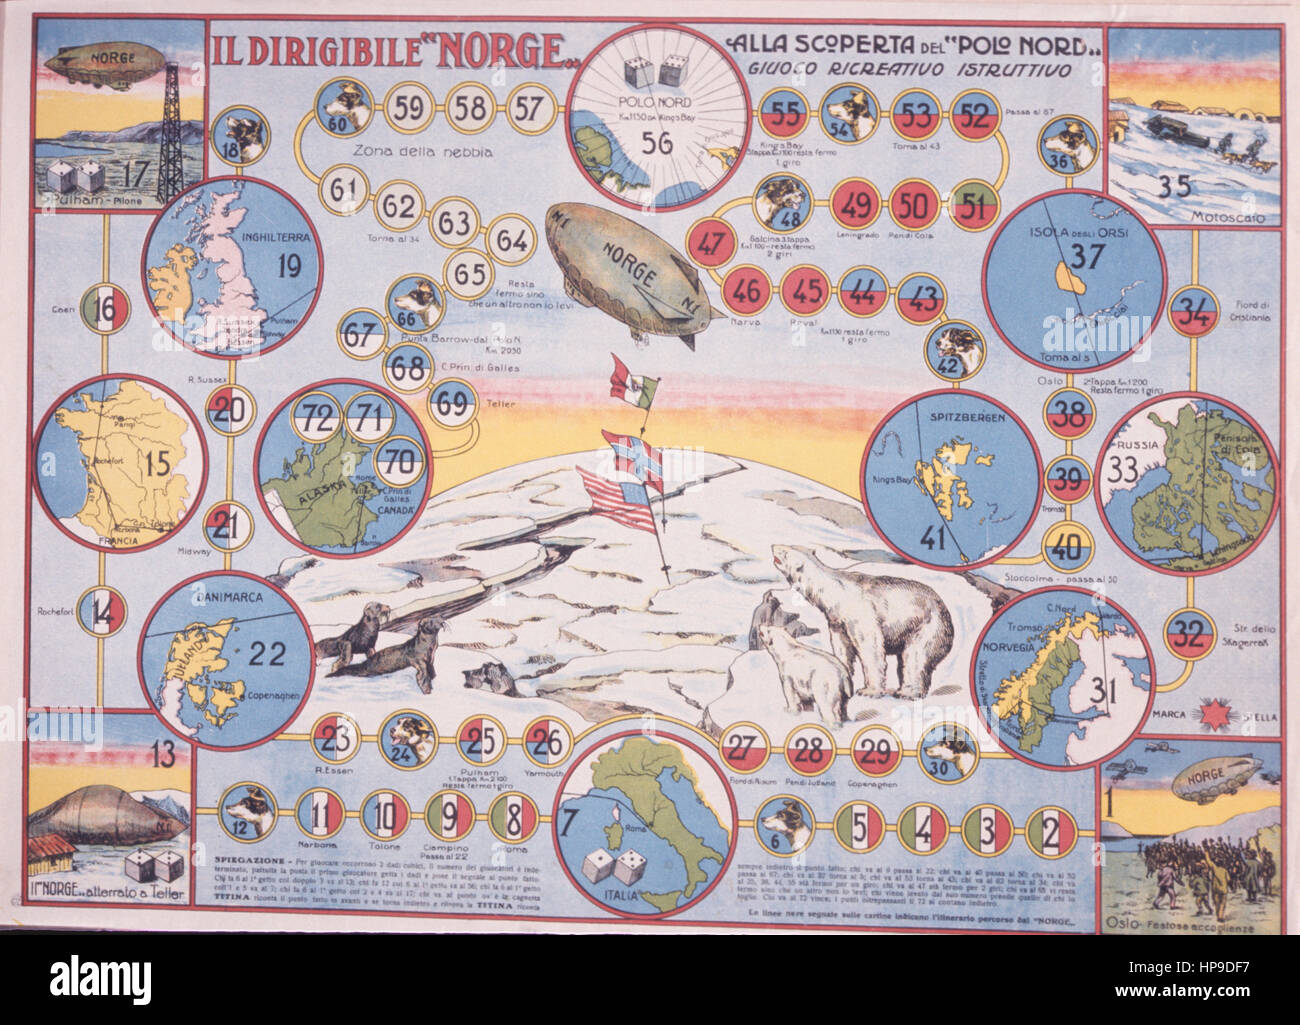 Il dirigibile norge,el descubrimiento del Polo Norte,juego recreativo educativo,1926 Foto de stock